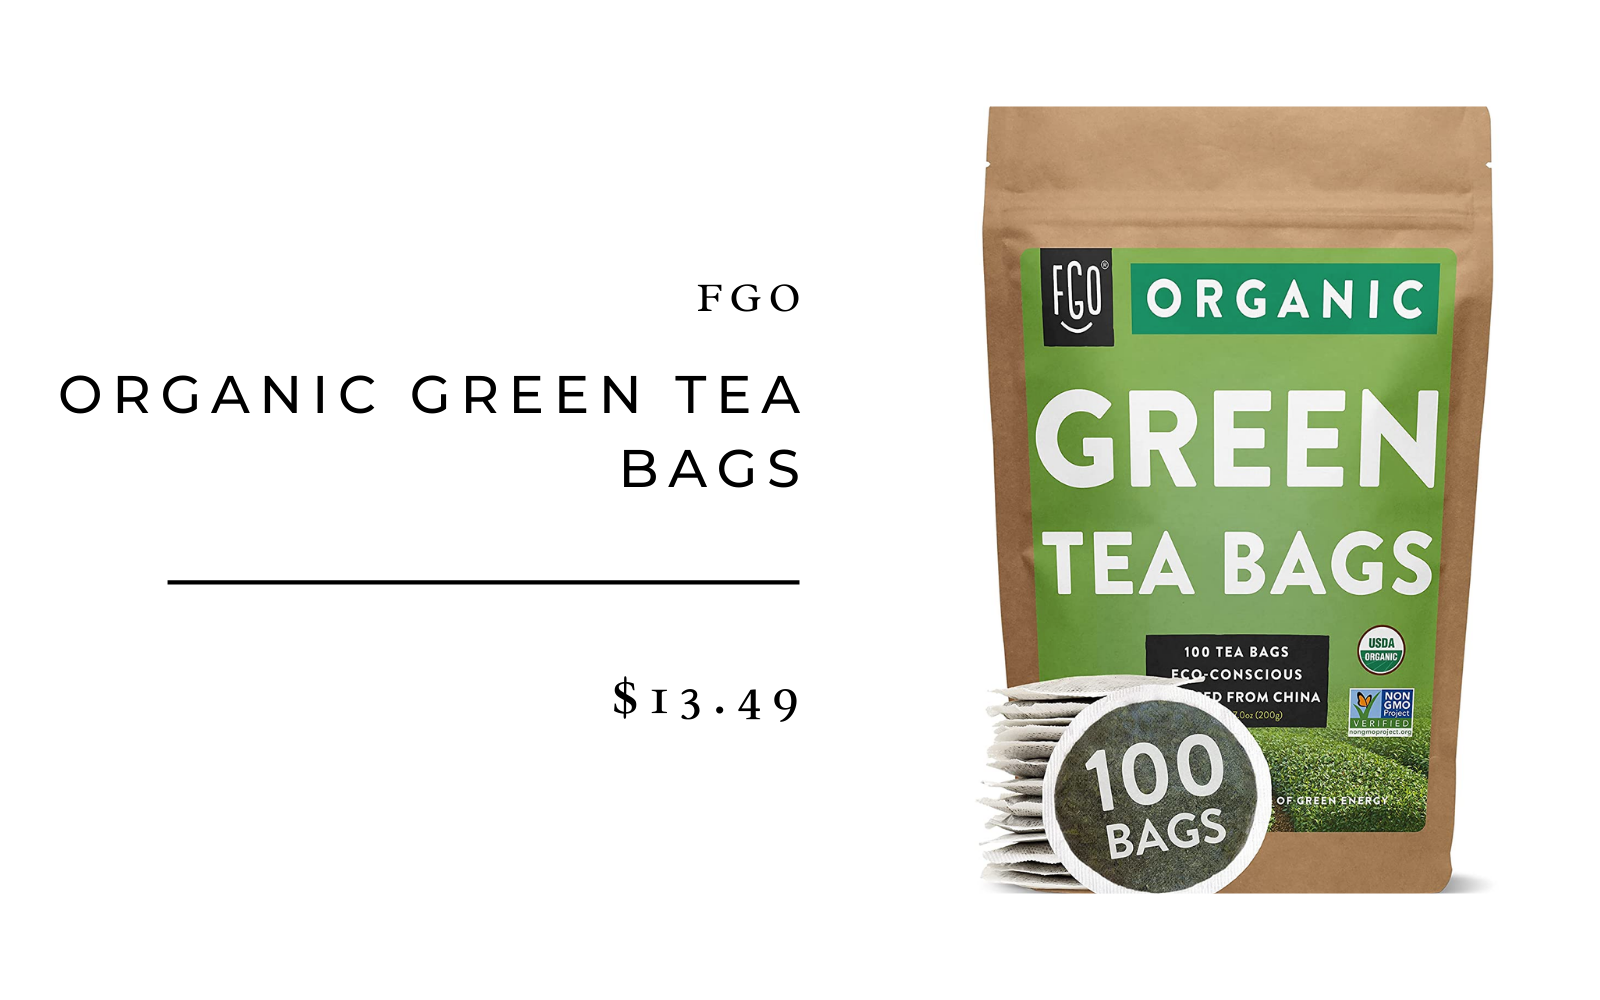 GFO Organic green tea